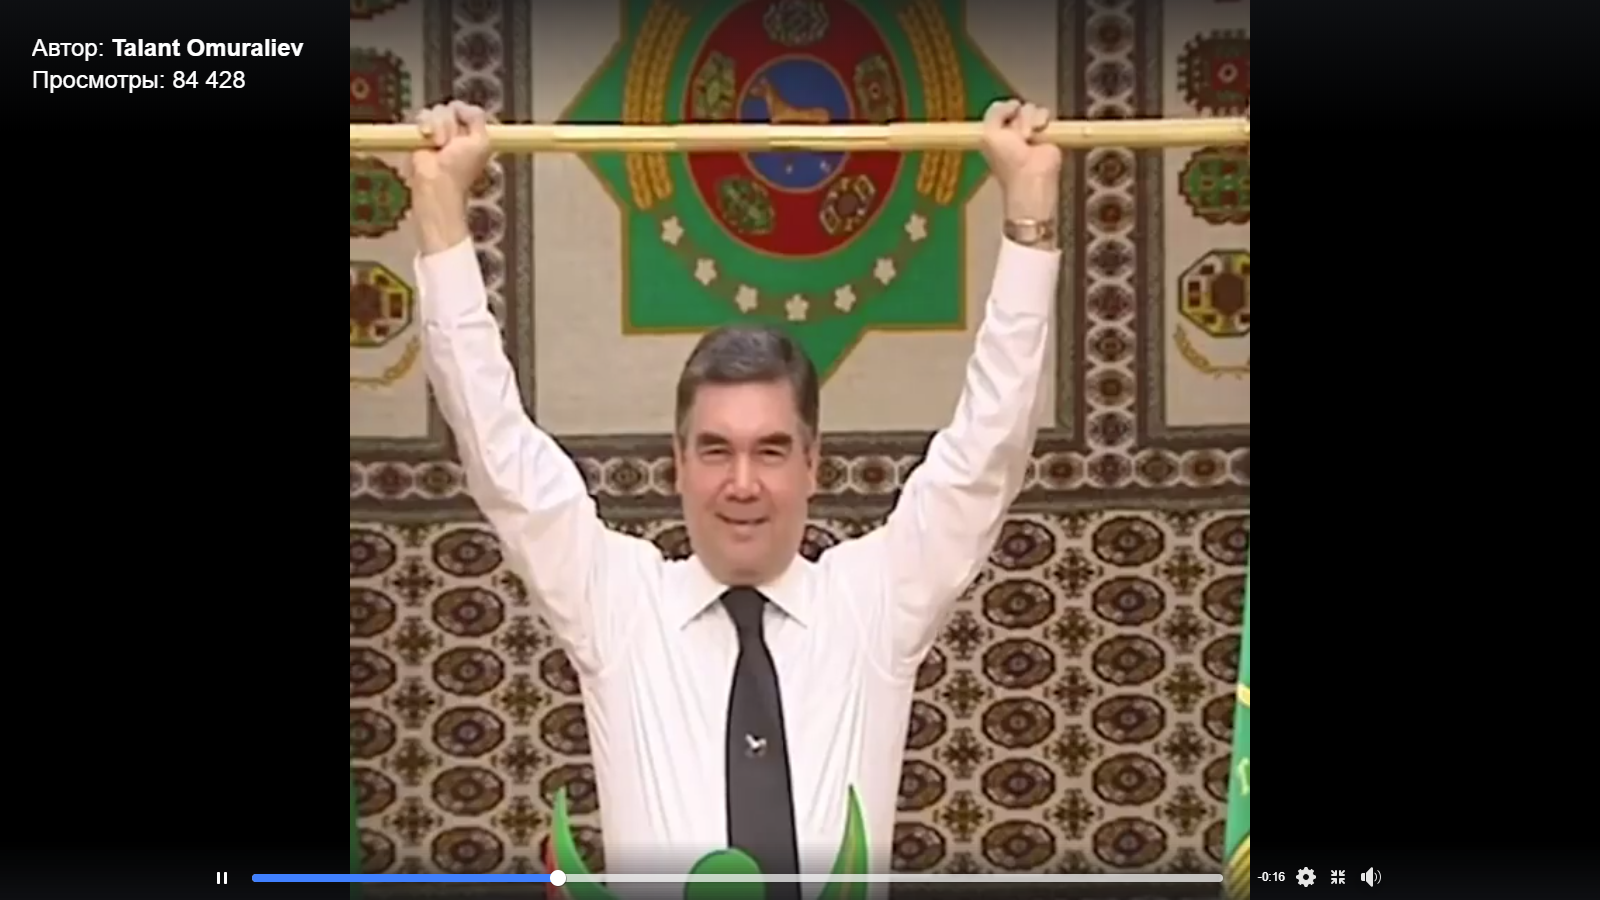 Видео дня: Президент Туркмении развлек голодающий народ штангой